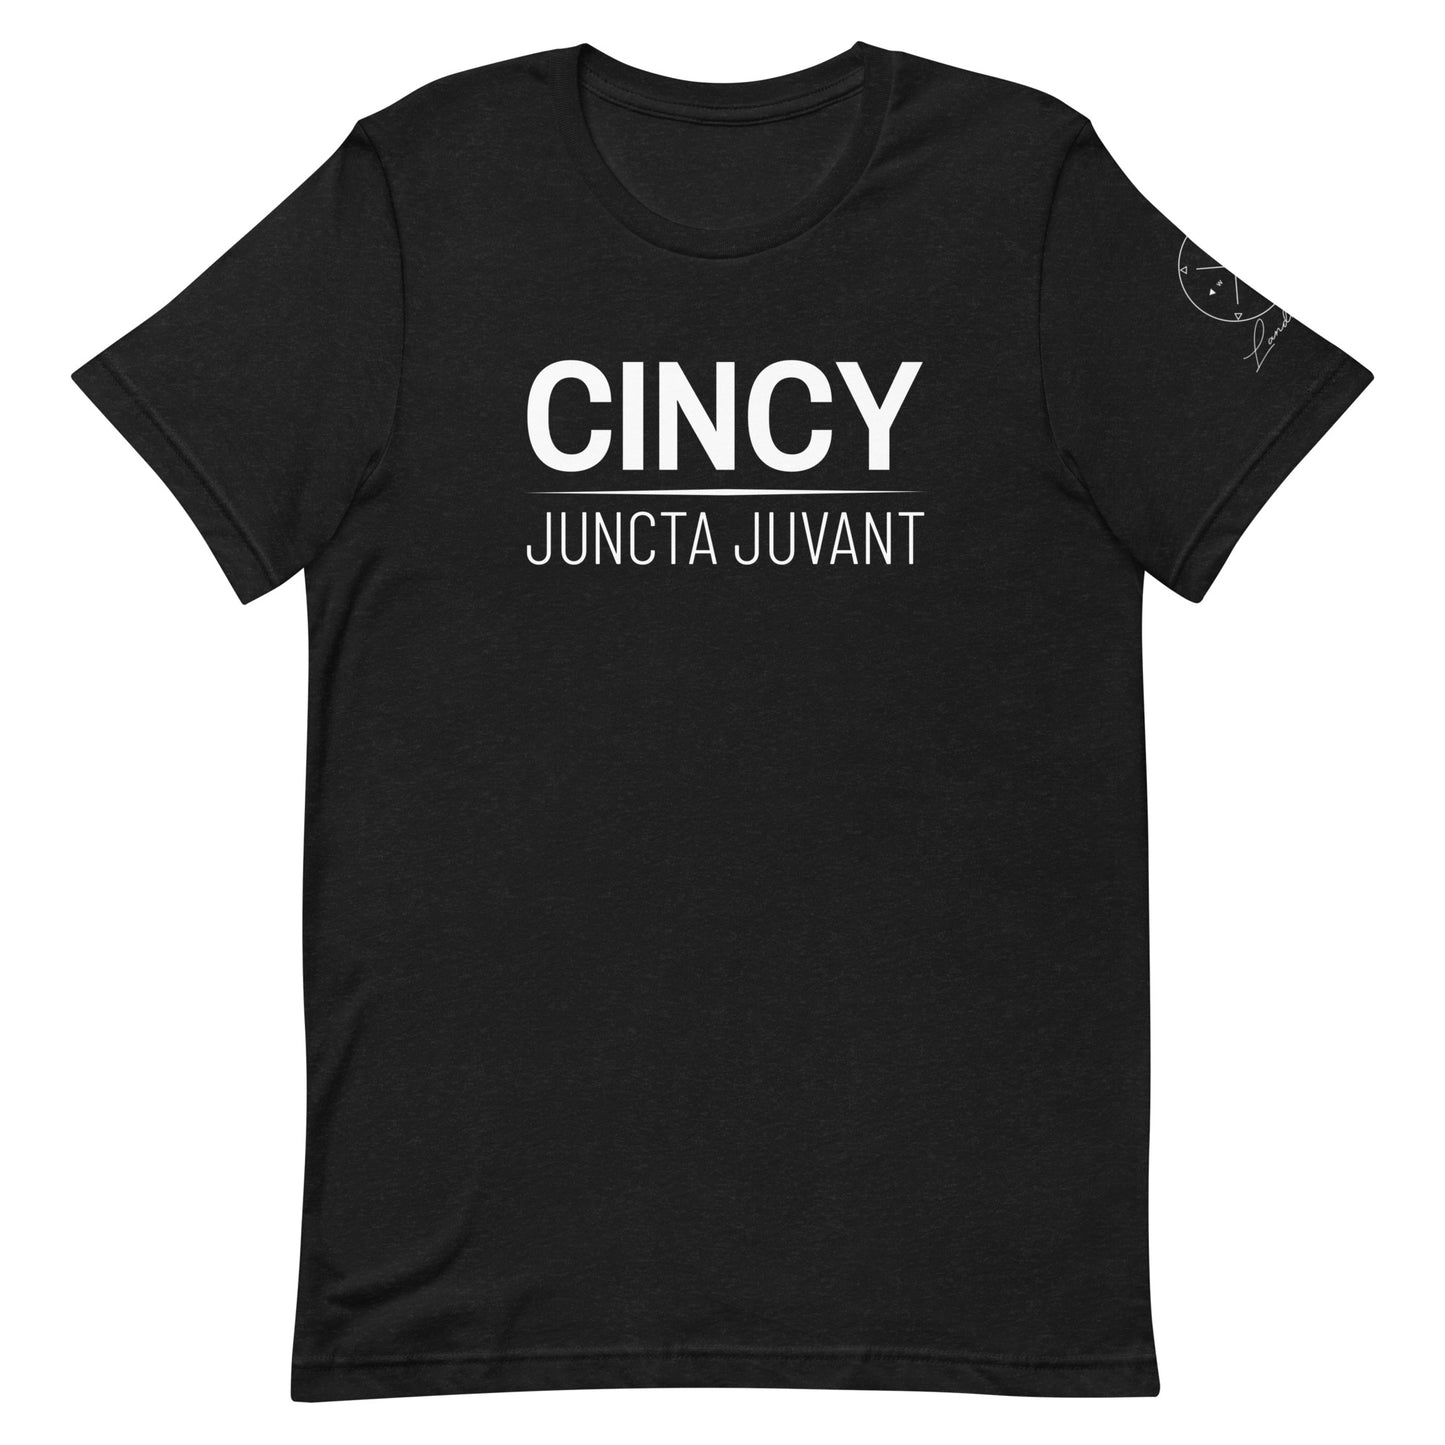 Cincy - Juncta Juvant Tee